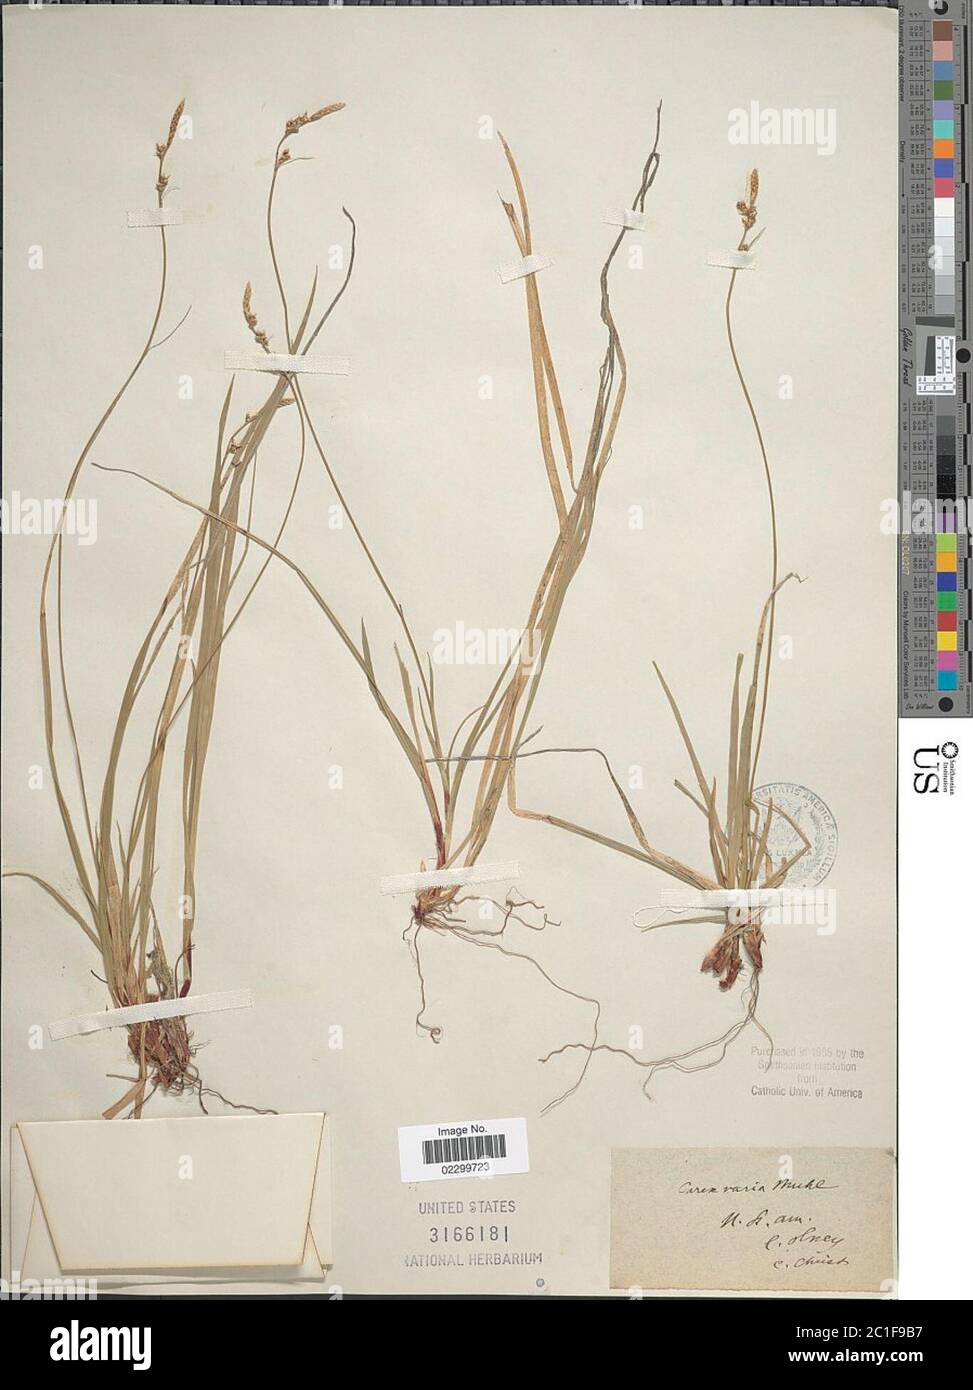 Carex albicans Willd ex Spreng Carex albicans Willd ex Spreng. Stock Photo